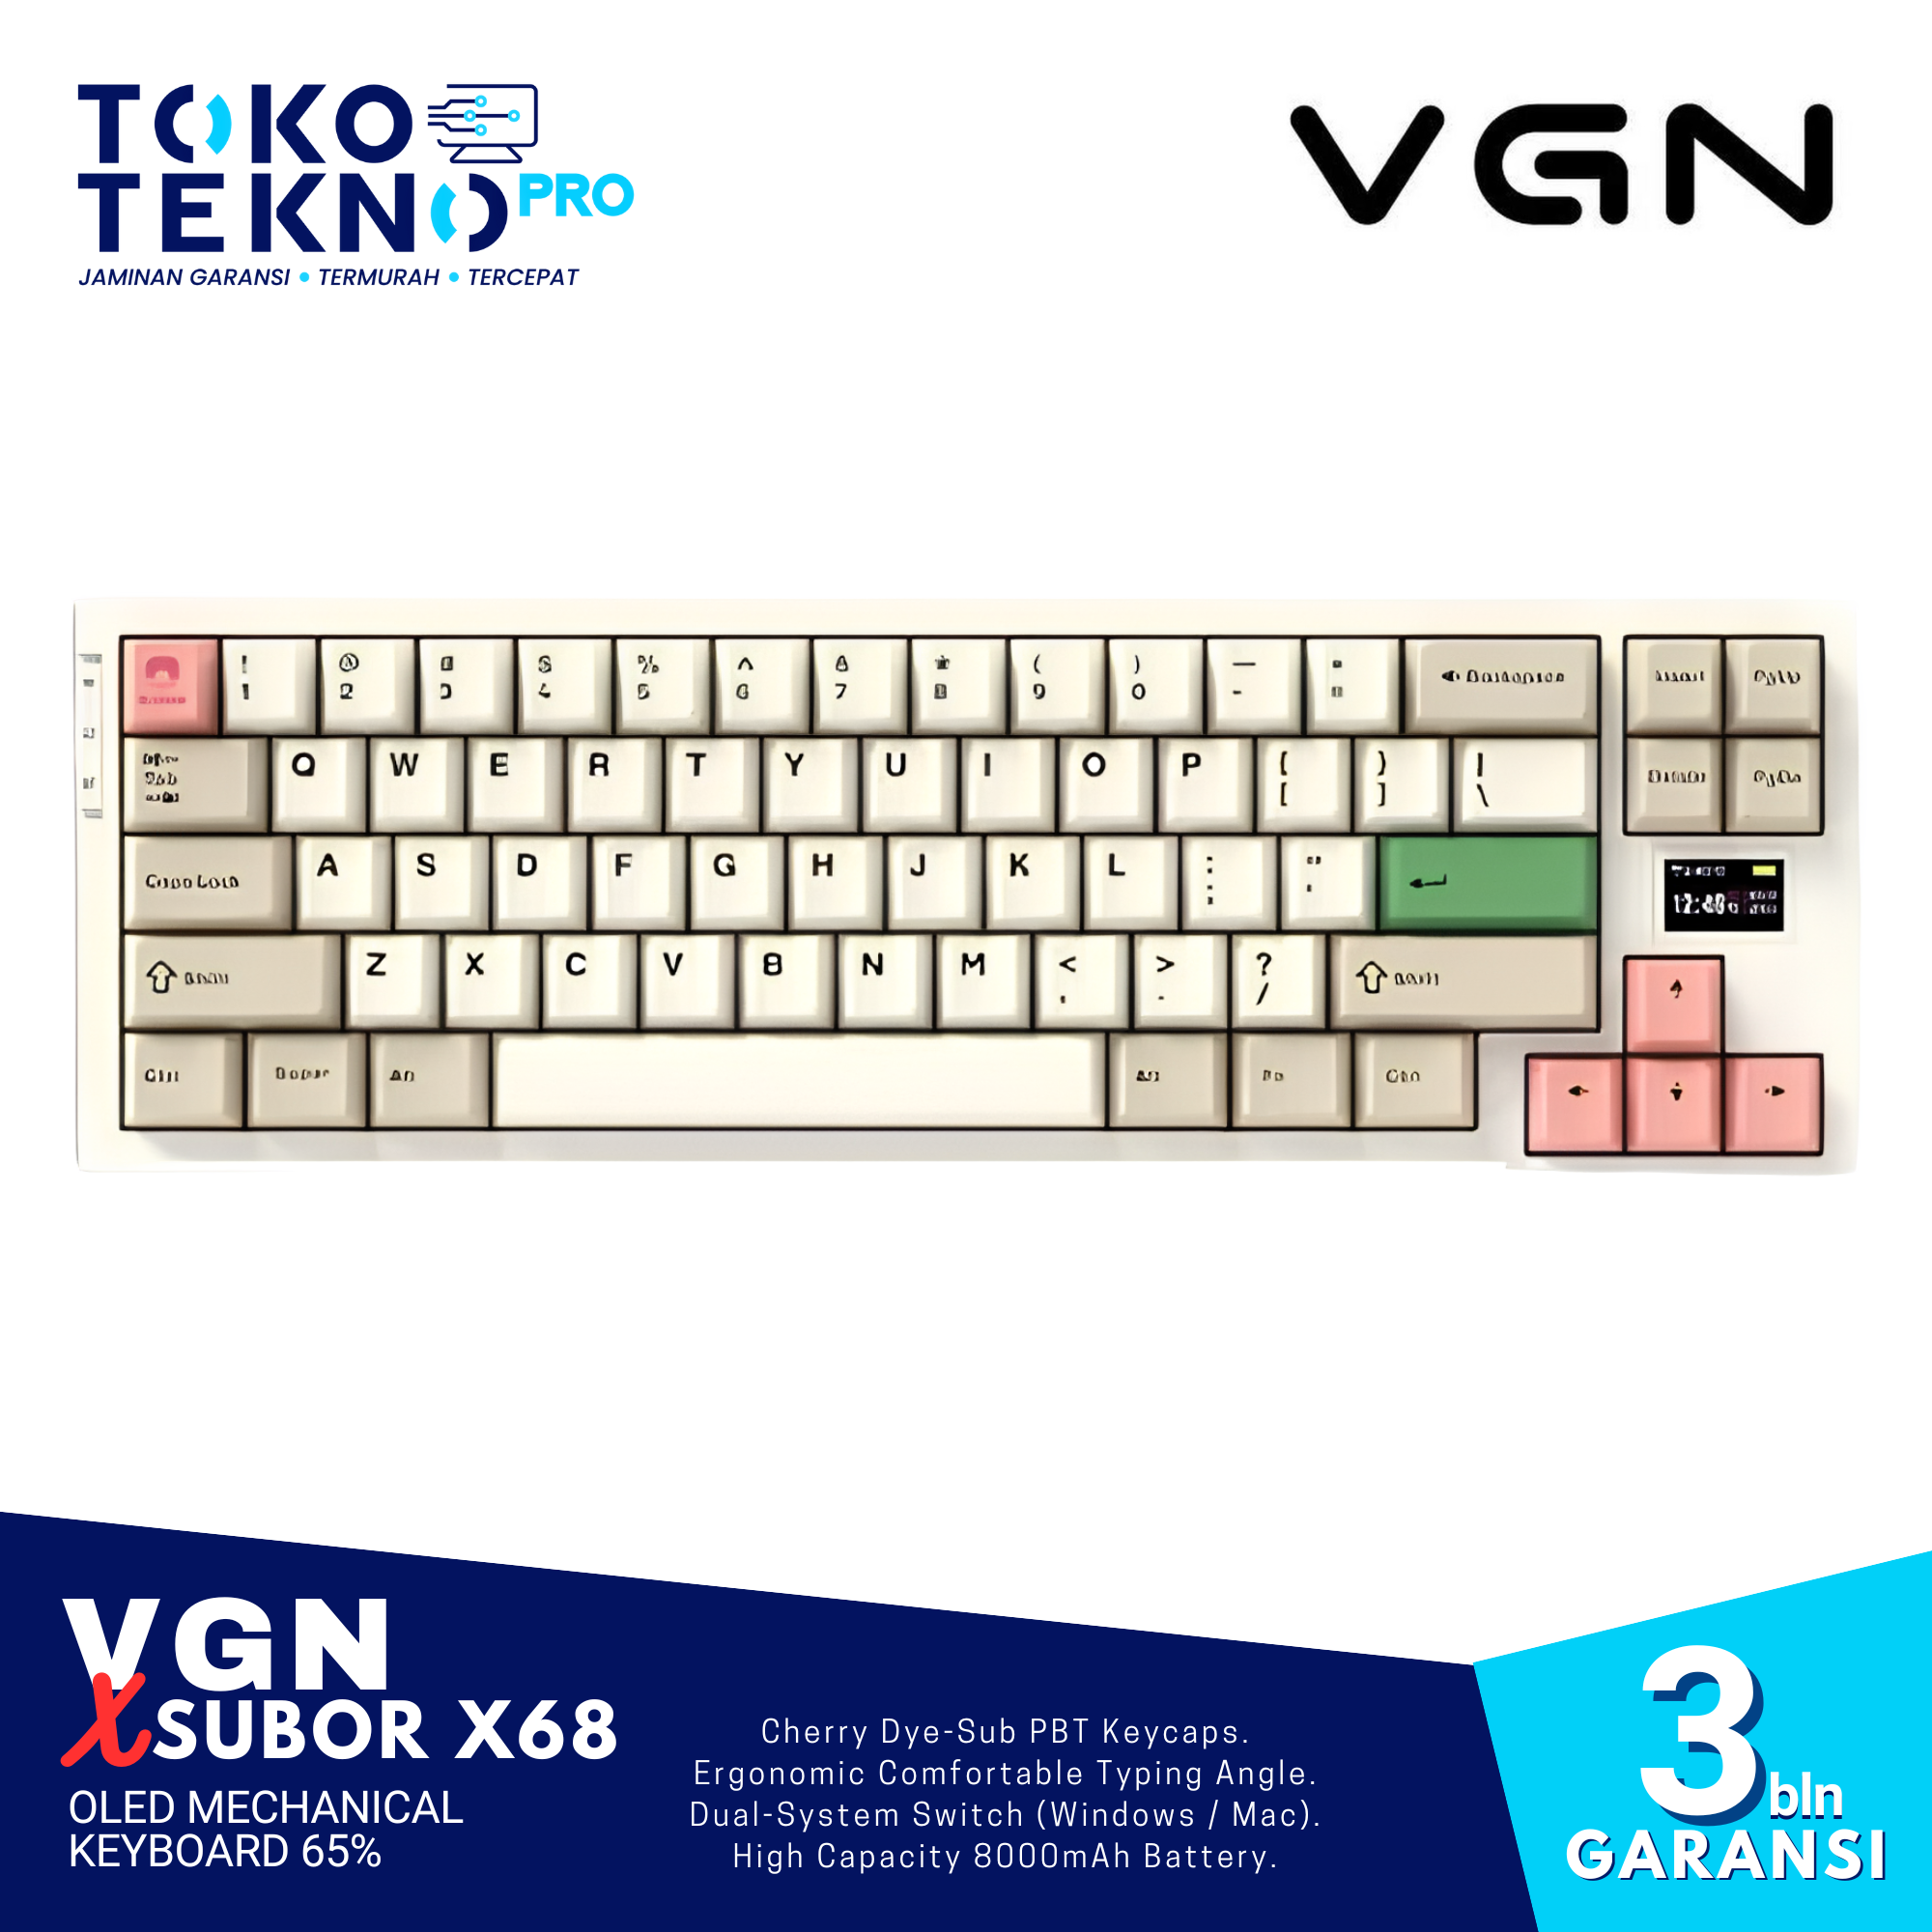 VGN x Subor X68